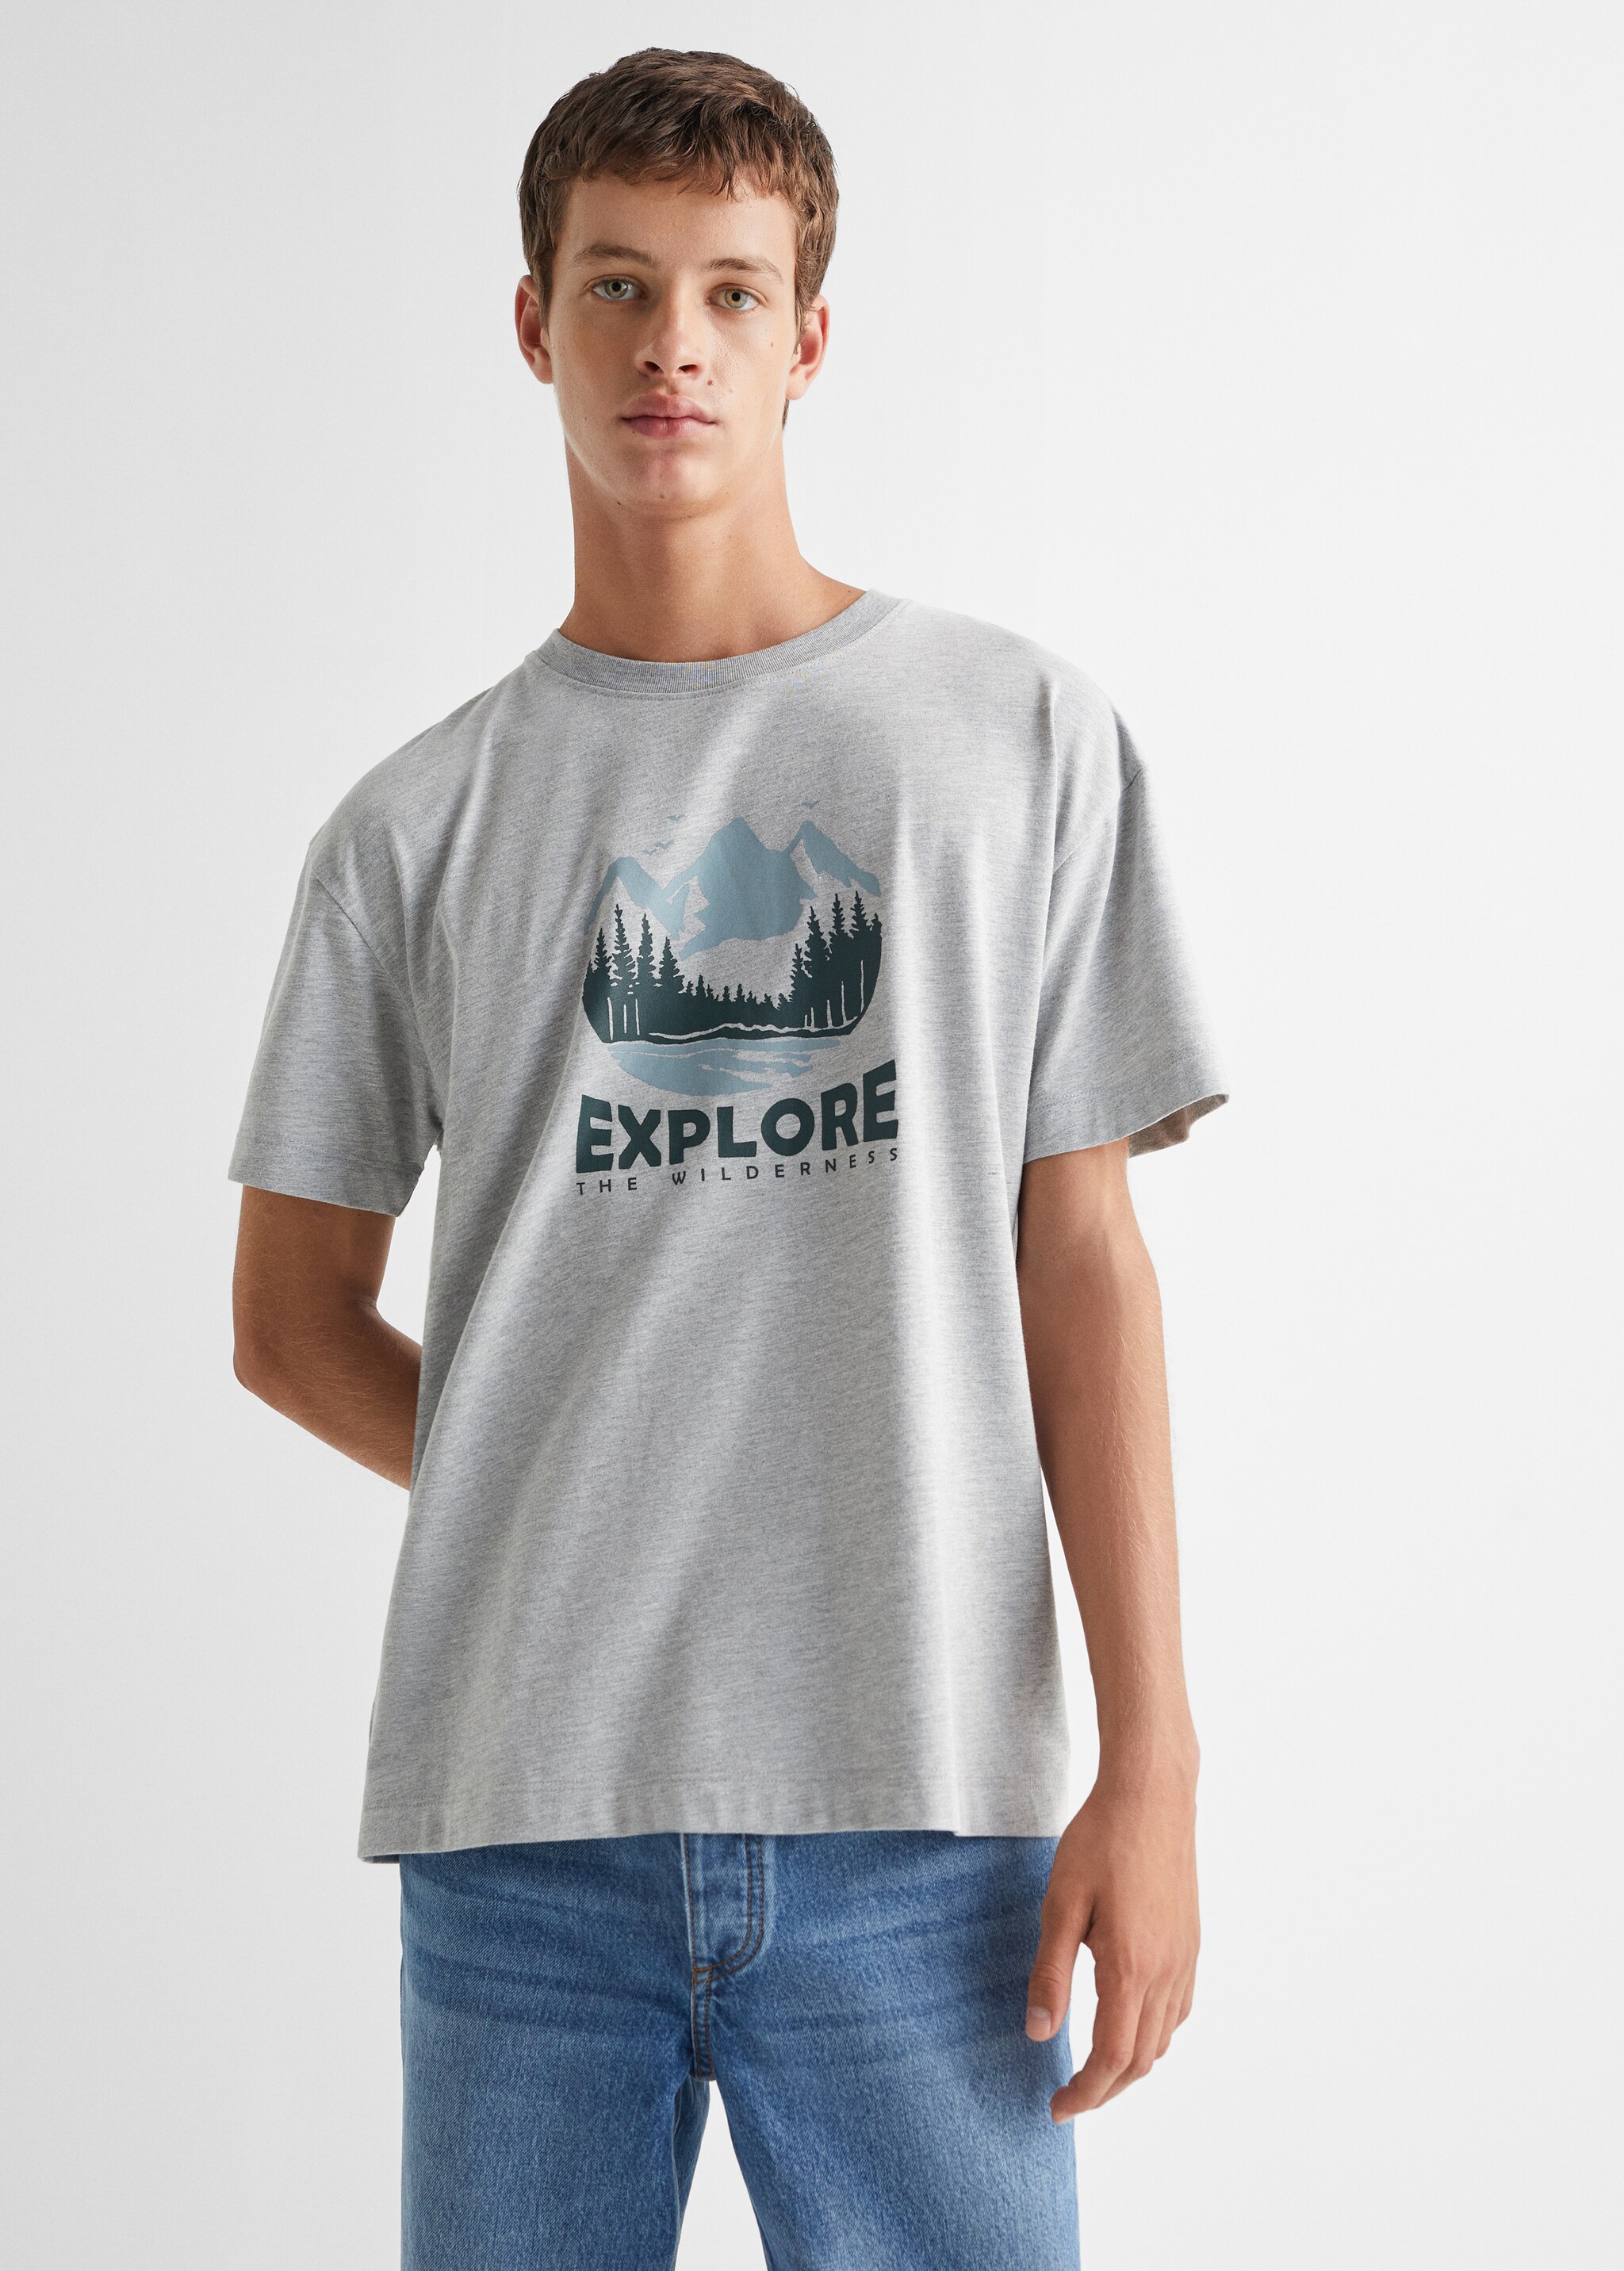 T-Shirt mit Textaufdruck - Mittlere Ansicht